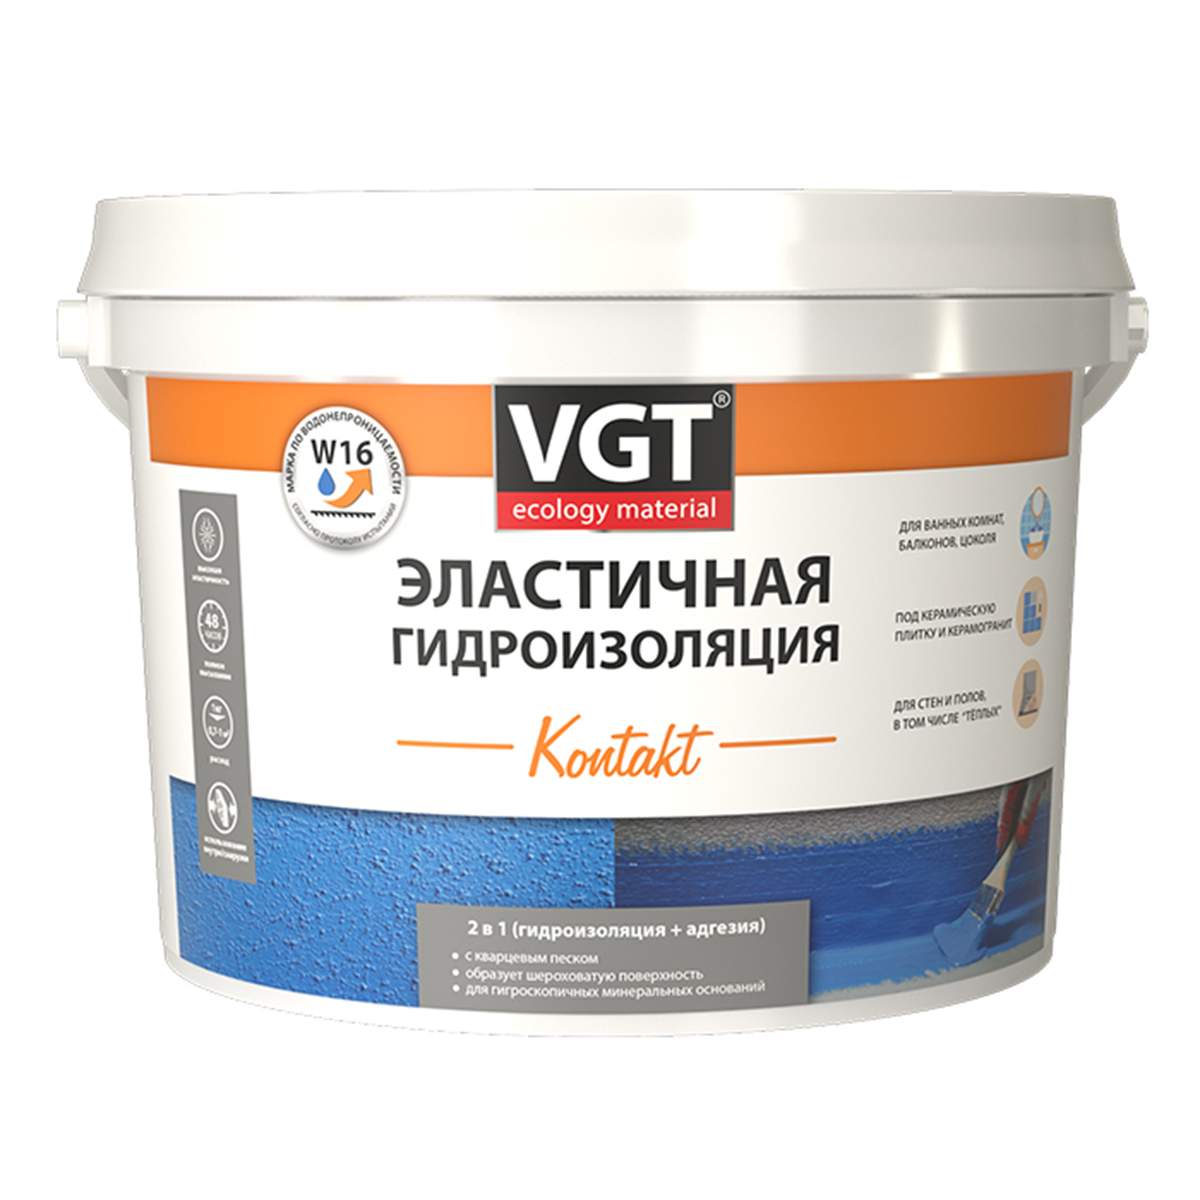 Гидроизоляция эластичная полимерная VGT Kontakt, 3 кг 39238 гидроизоляция эластичная glims greyresin для наружных работ 4 кг